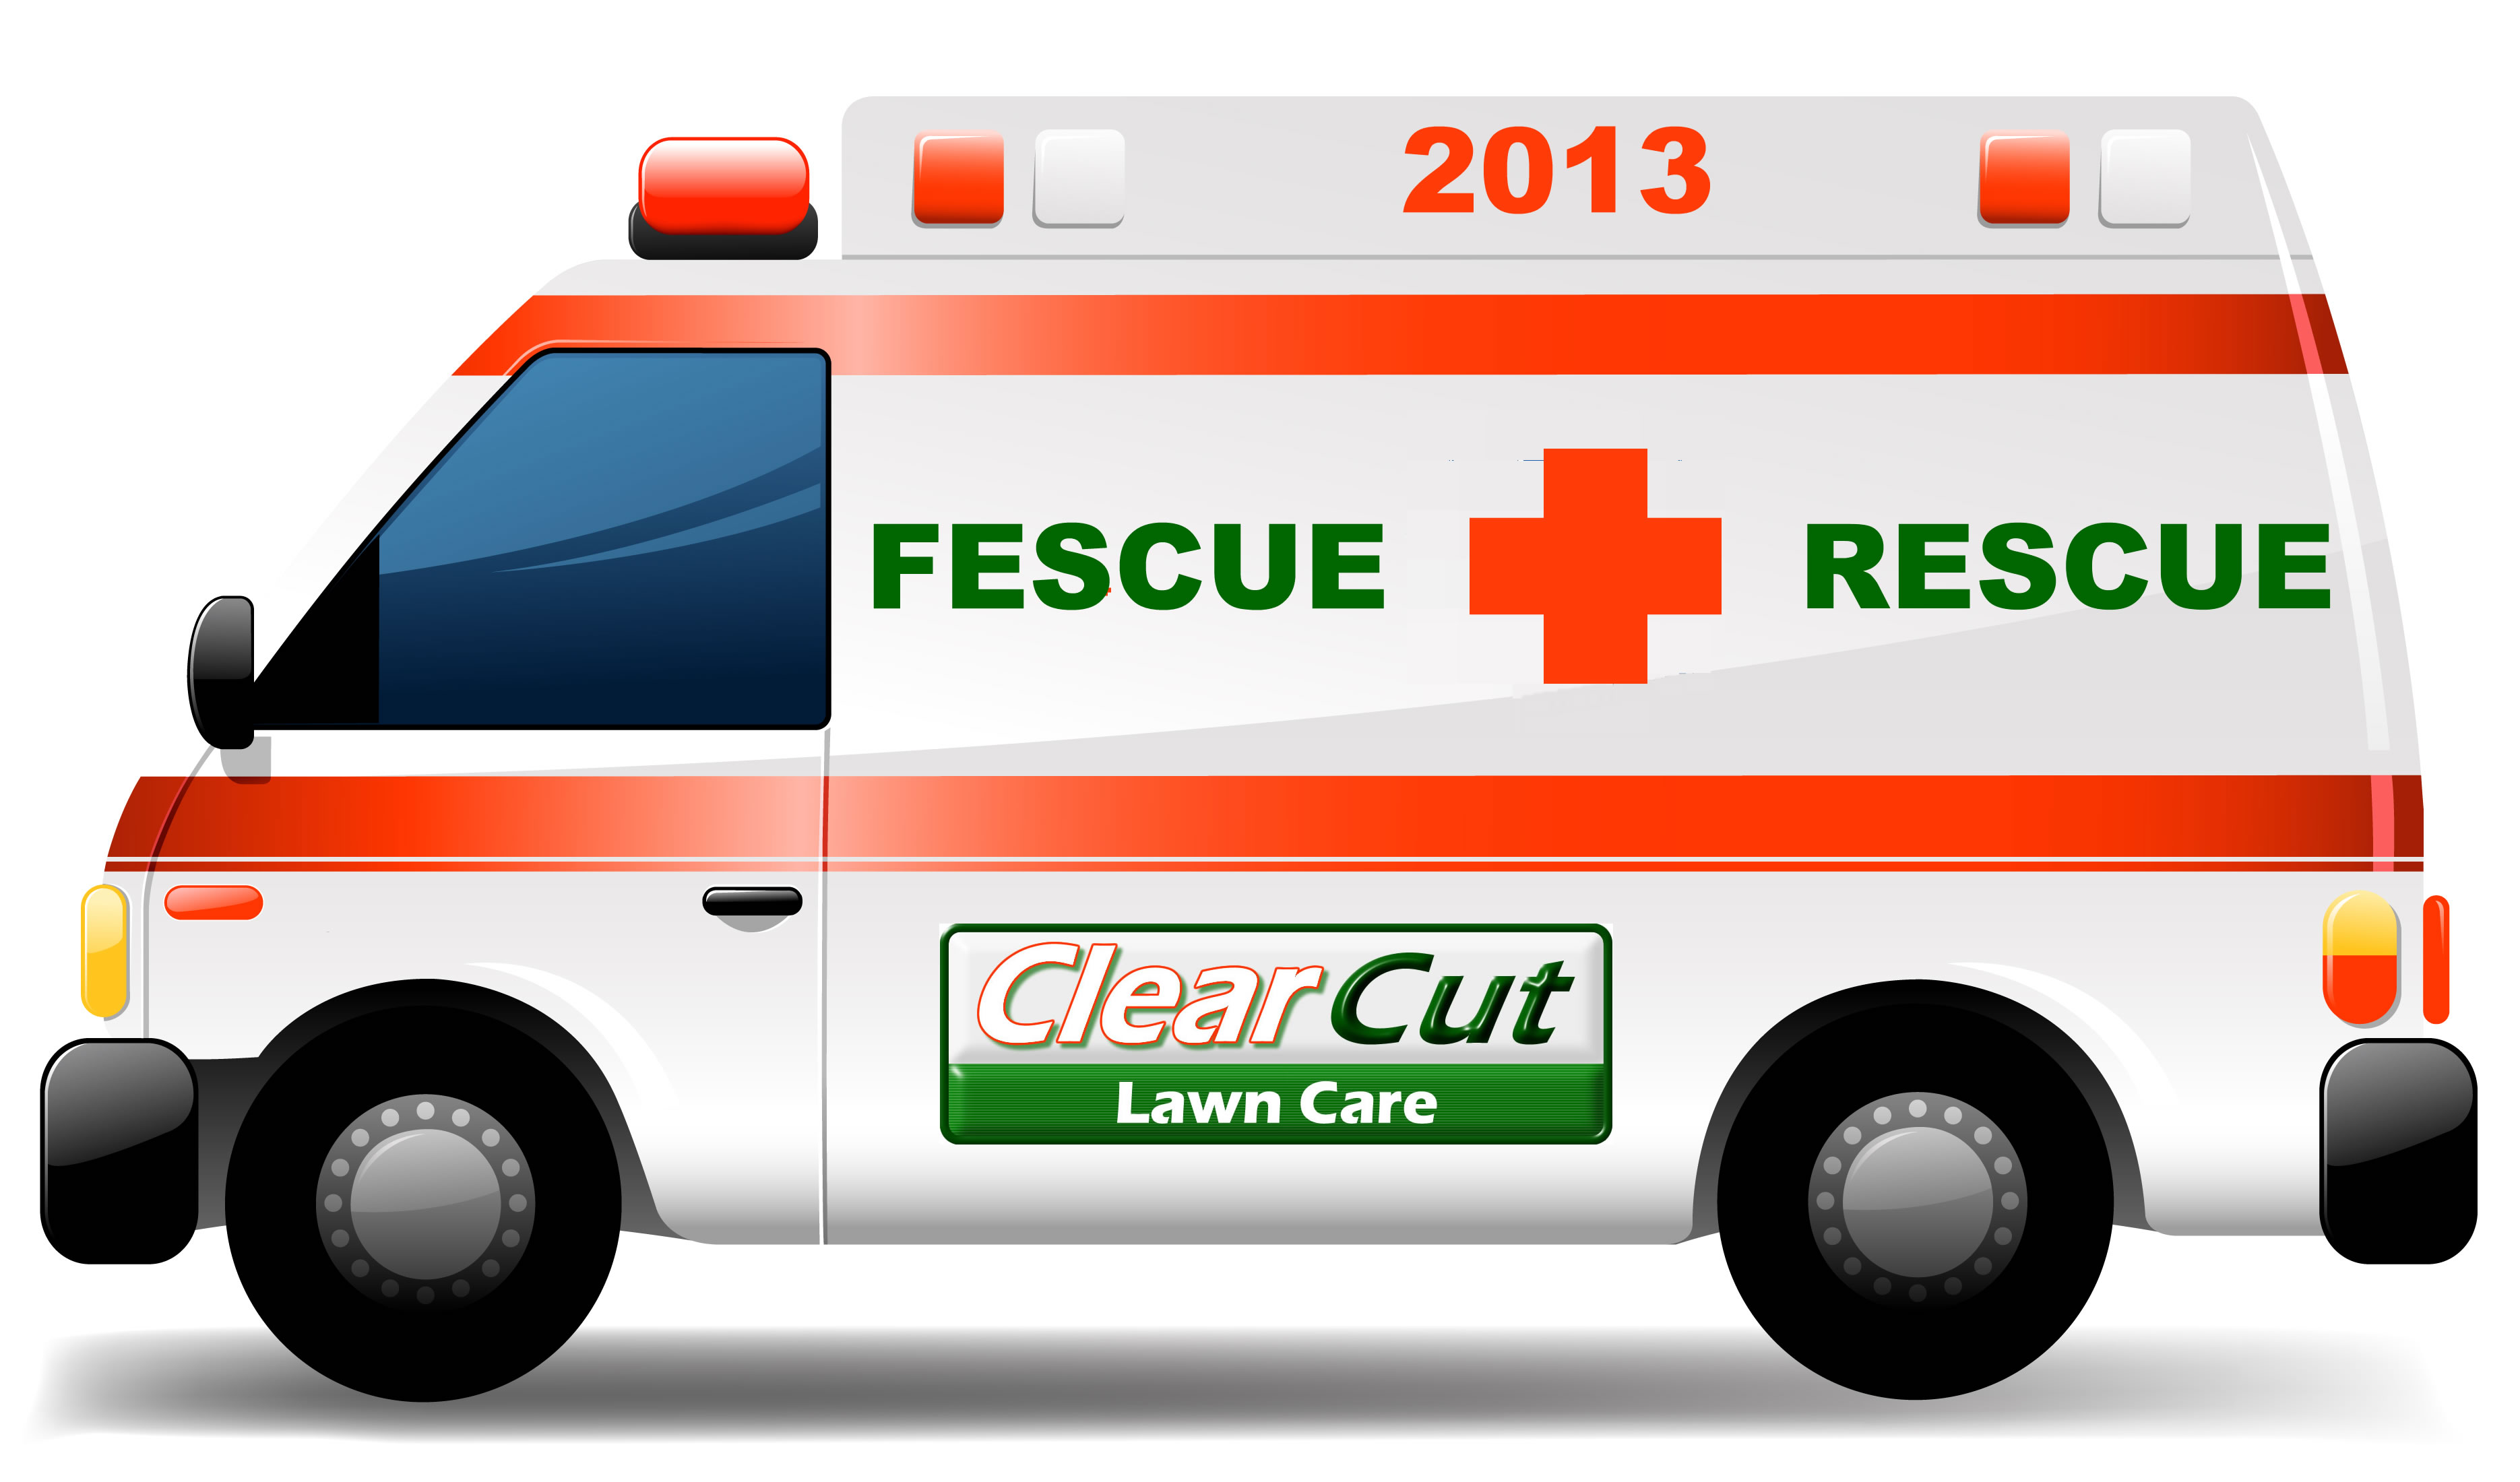 Fescue Rescue 2013